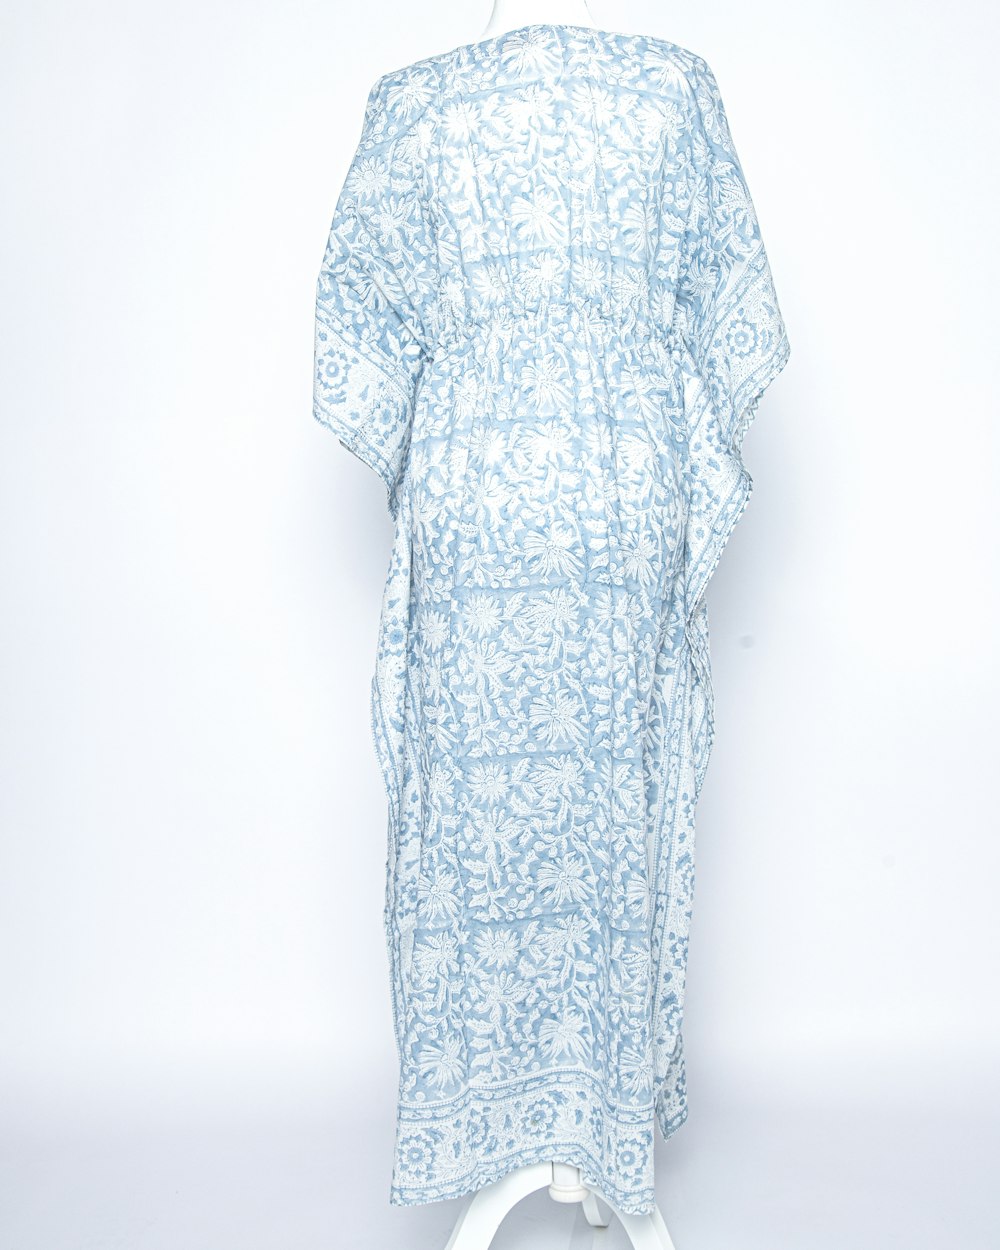 un vestito bianco e blu su un cavalletto